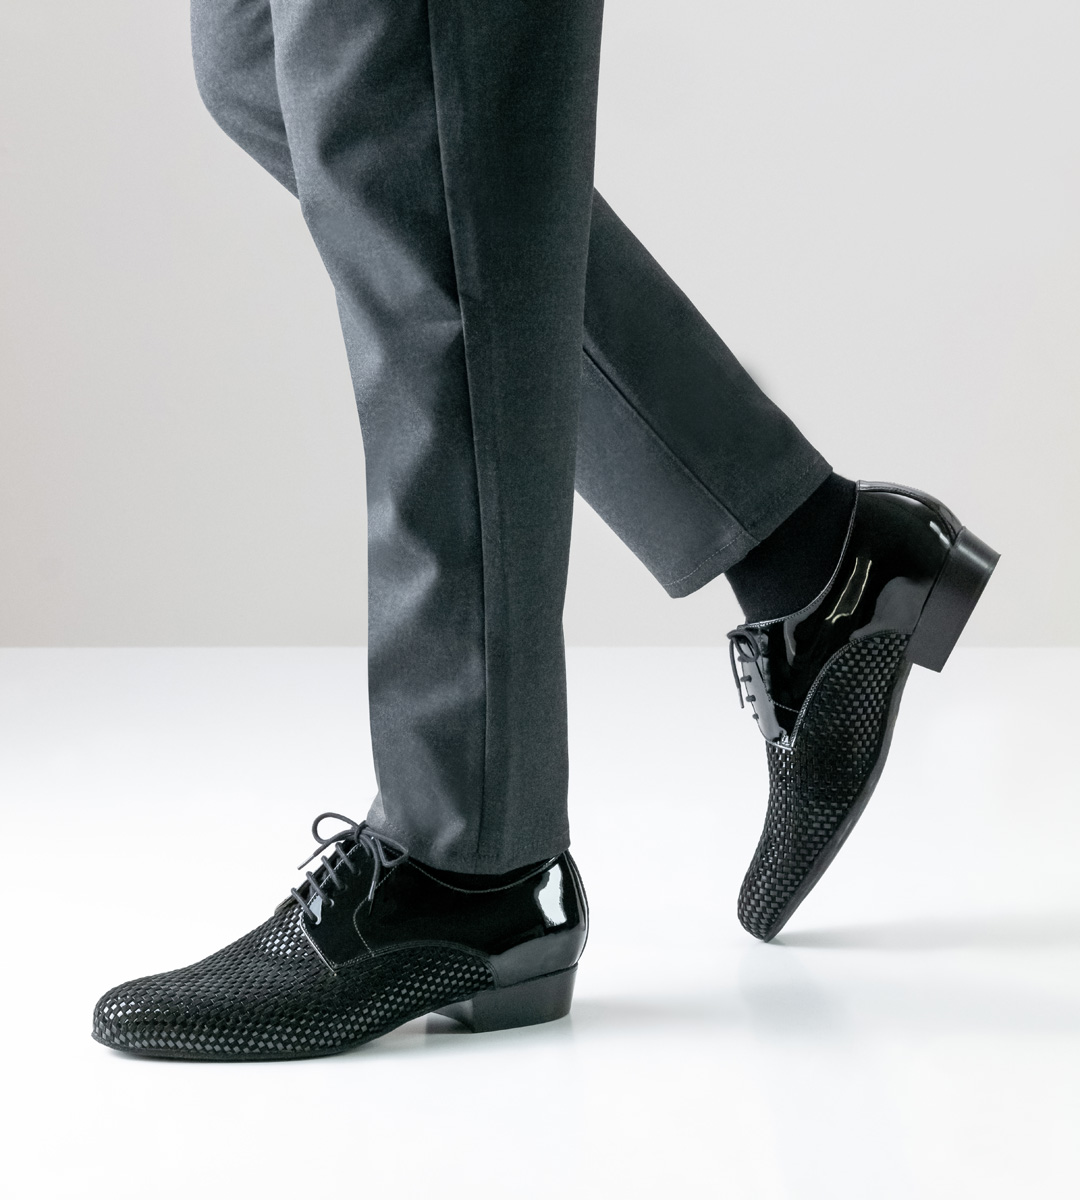 Men's dance shoe from Nueva Epoca with 2.5 cm heel